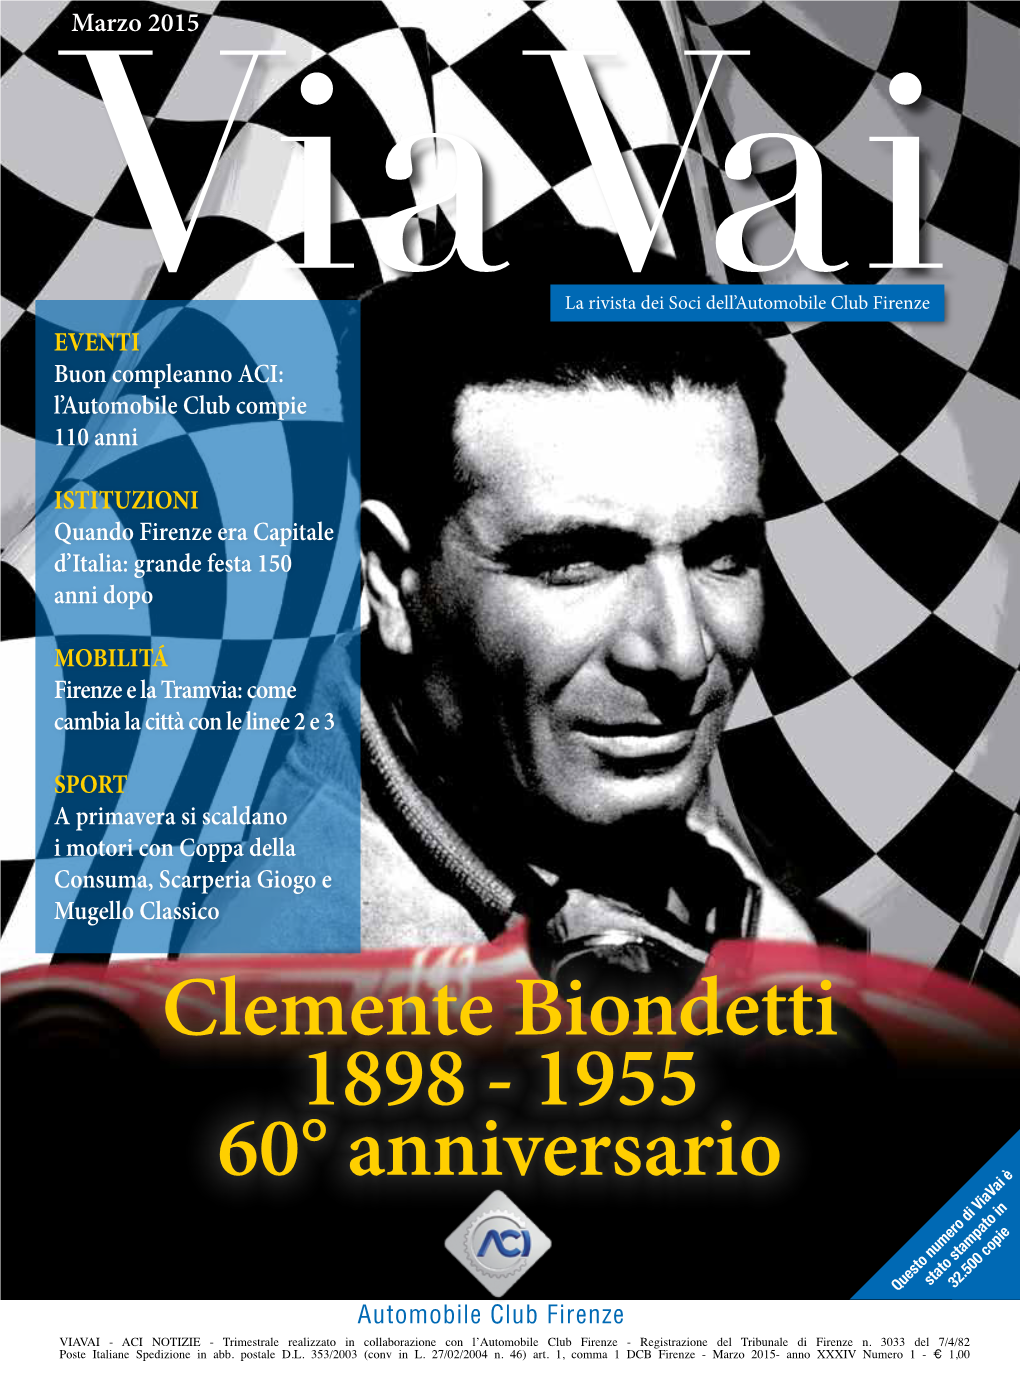 Clemente Biondetti 1898 - 1955 60° Anniversario